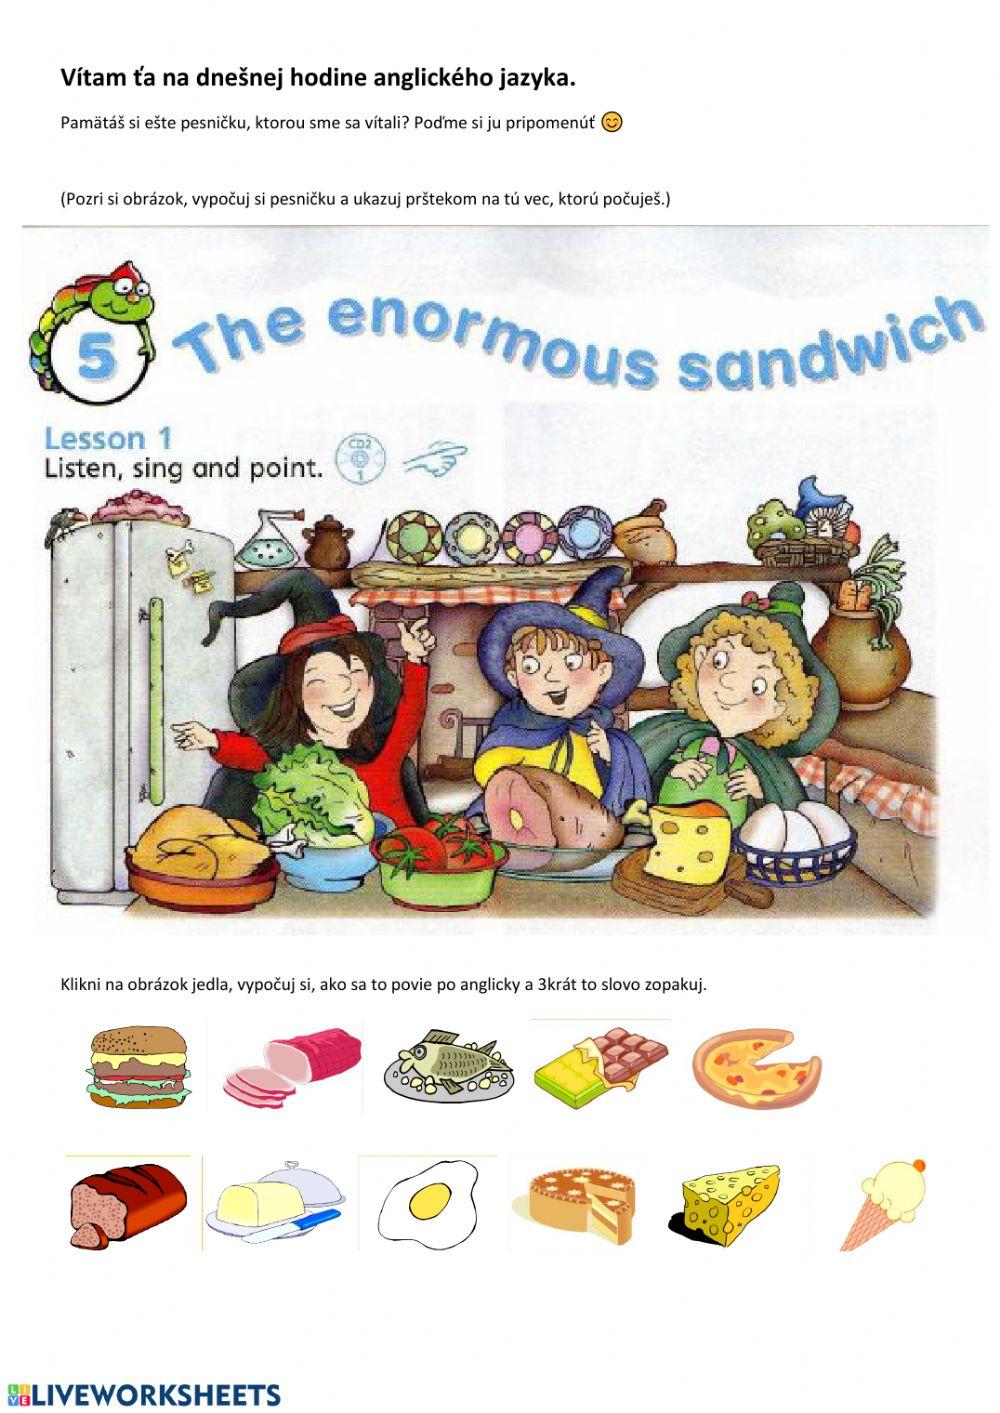 Enormous sandwich 1